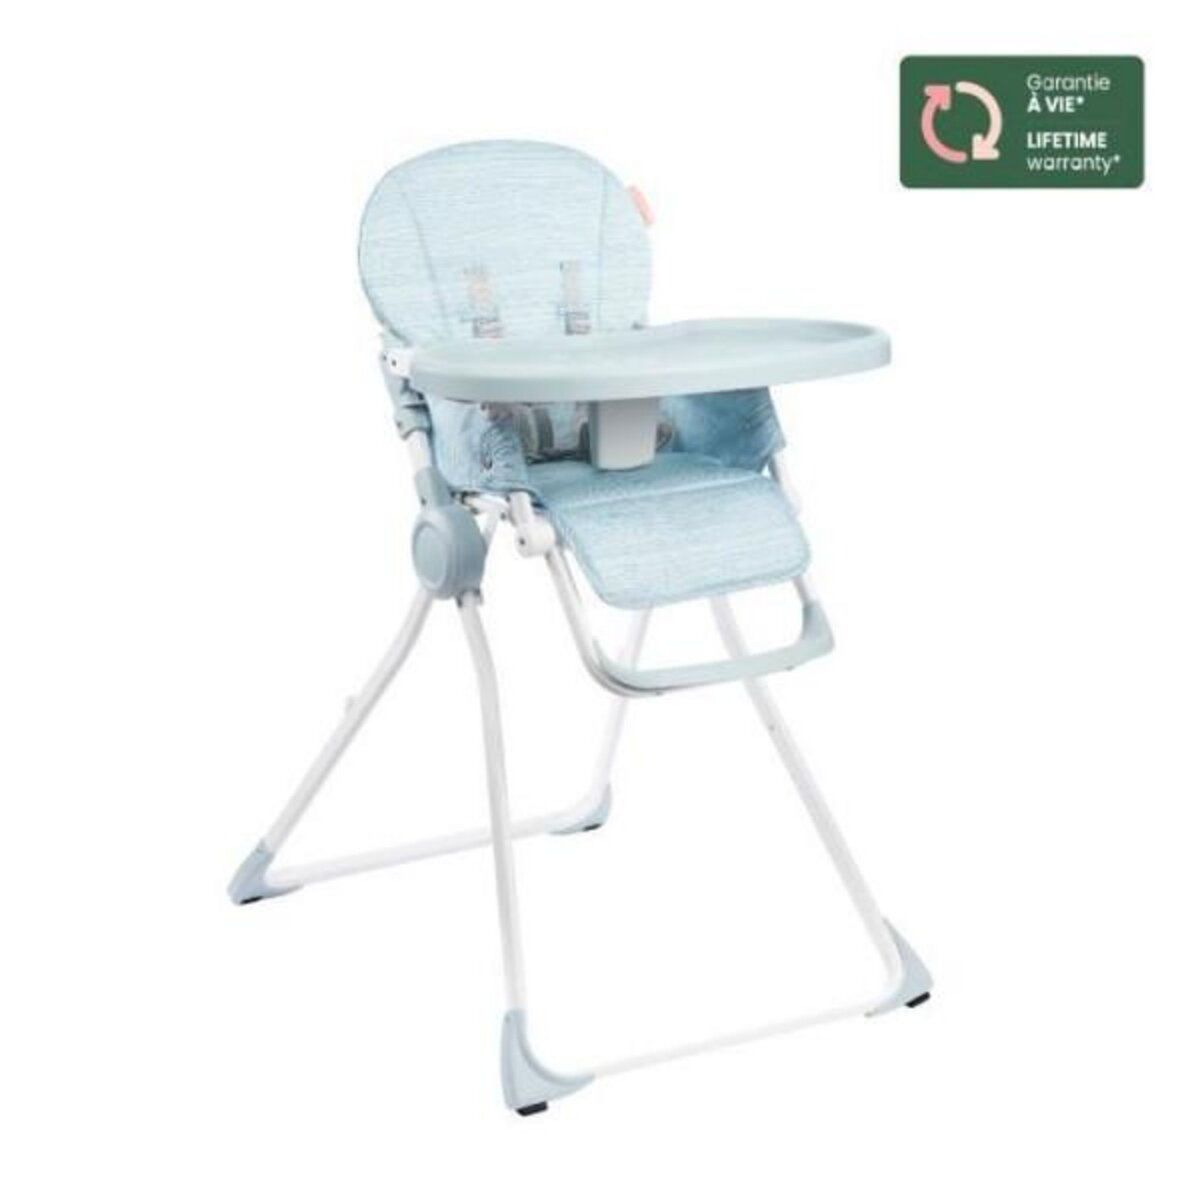 Rehausseur - Harnais chaise haute bébé